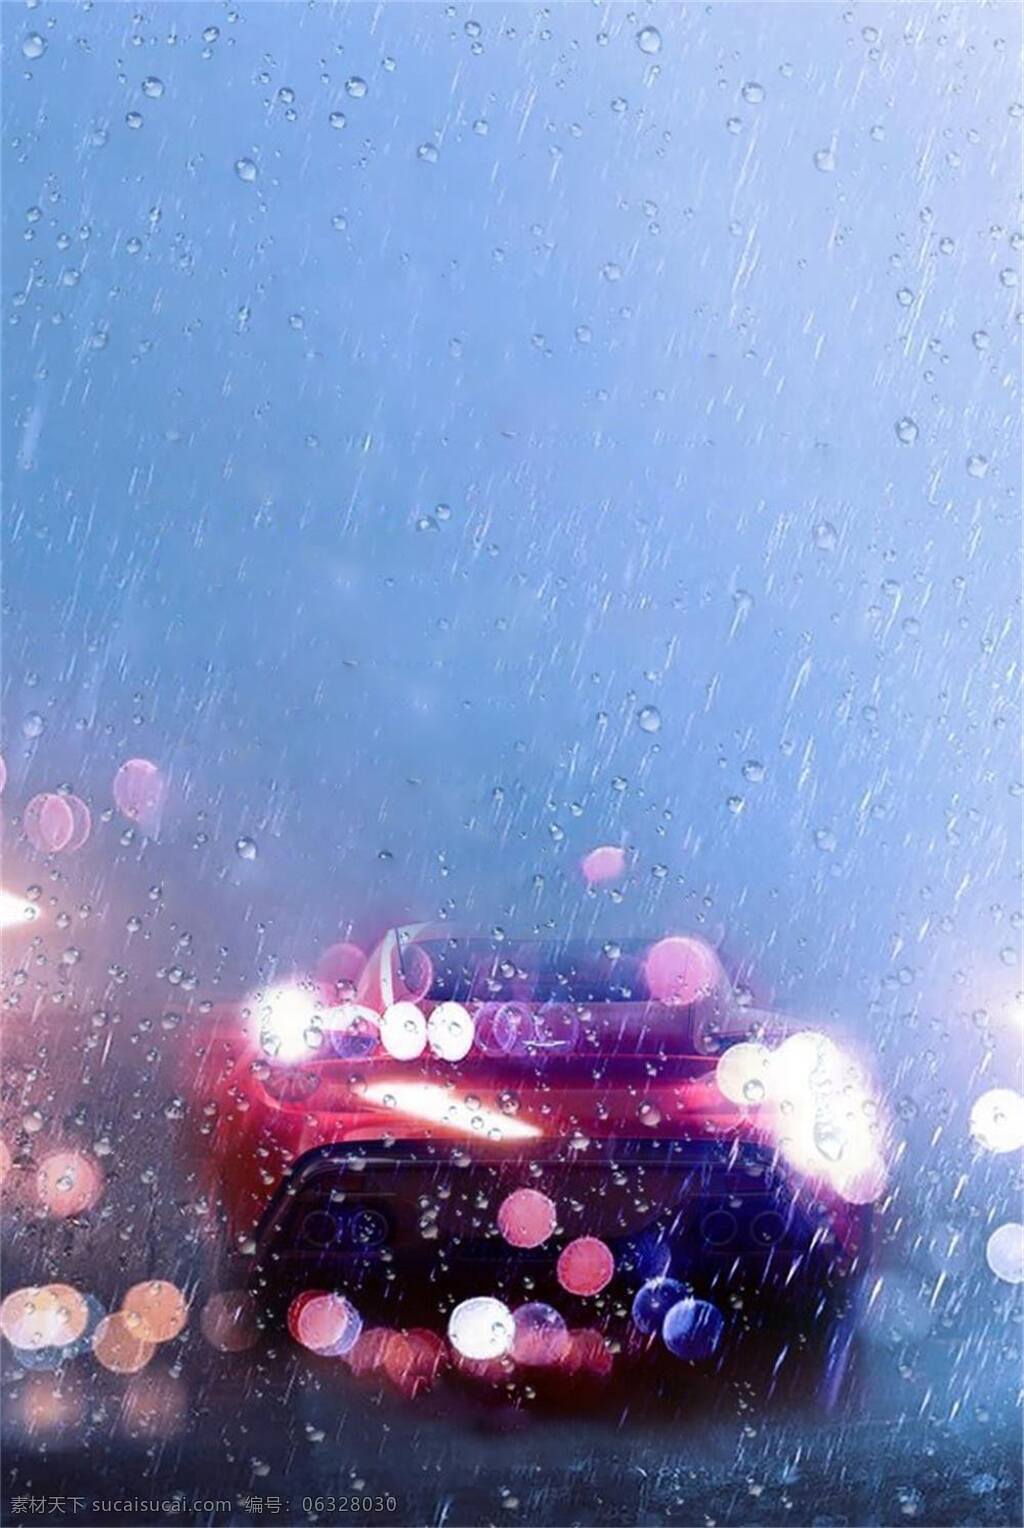 雨中汽车背景 下雨 汽车 灯光 背景 暴雨